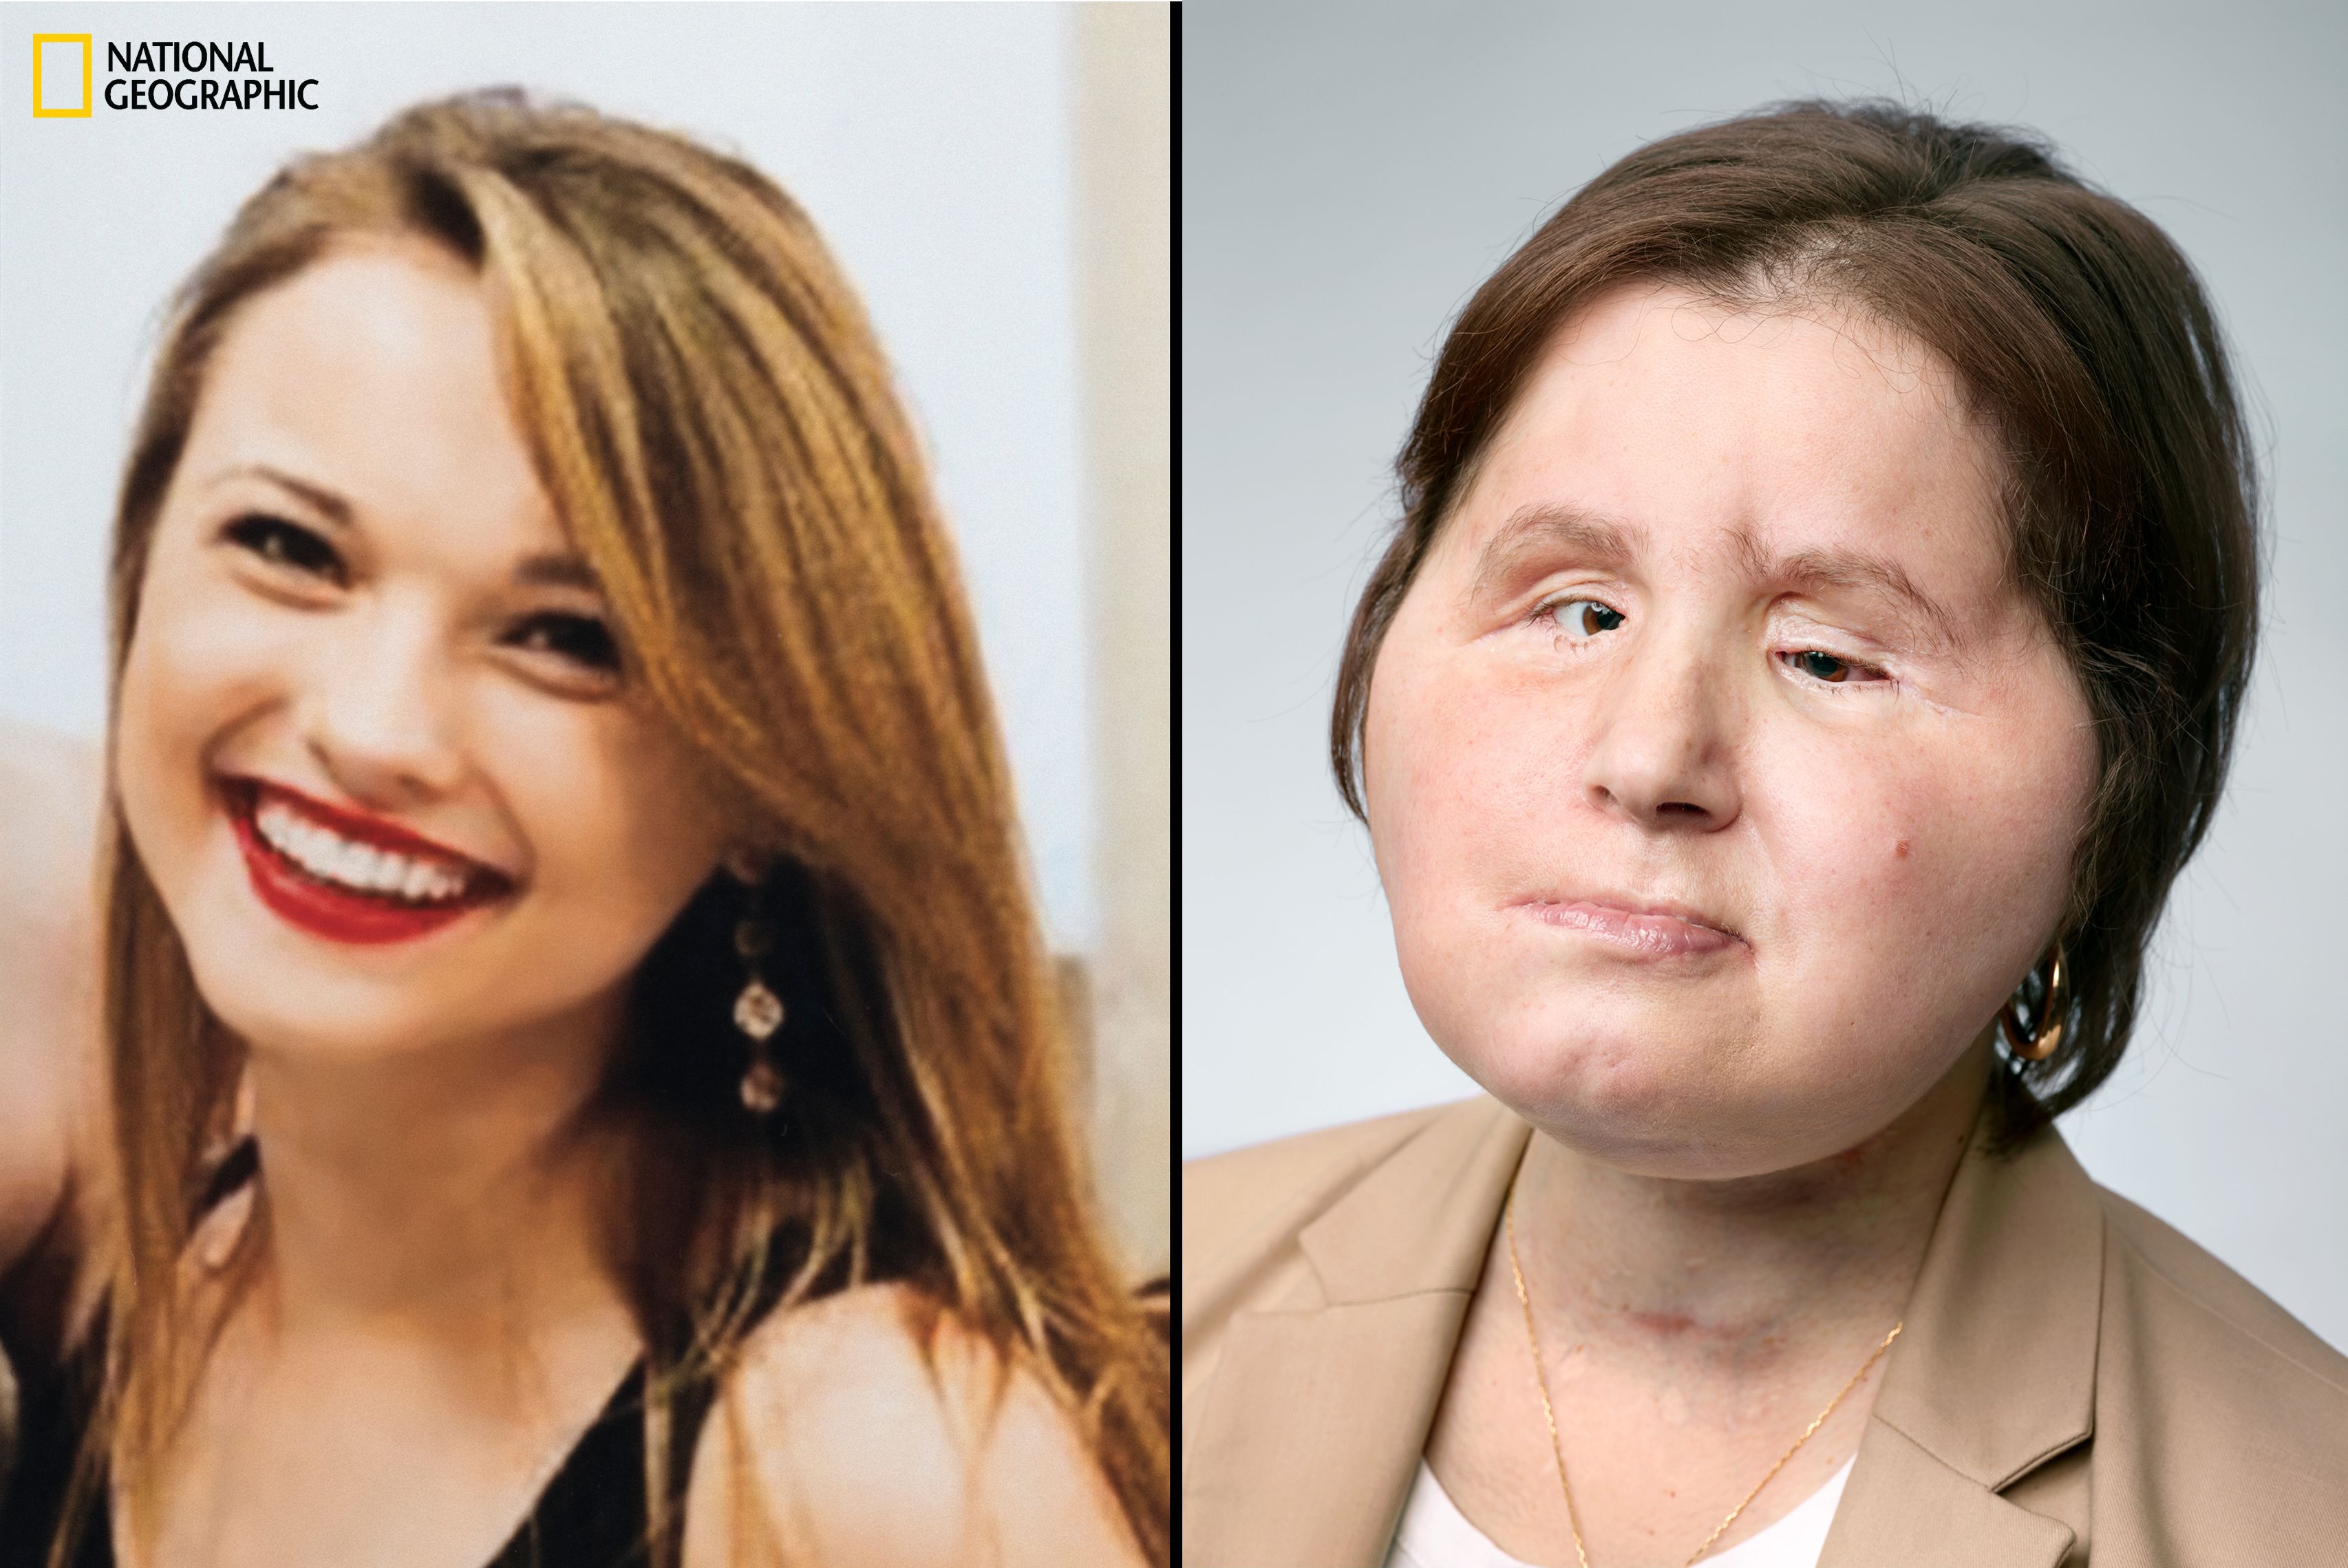 3412px x 2279px - Katie Stubblefield: Face transplant gives suicide survivor a 'second  chance' | CNN